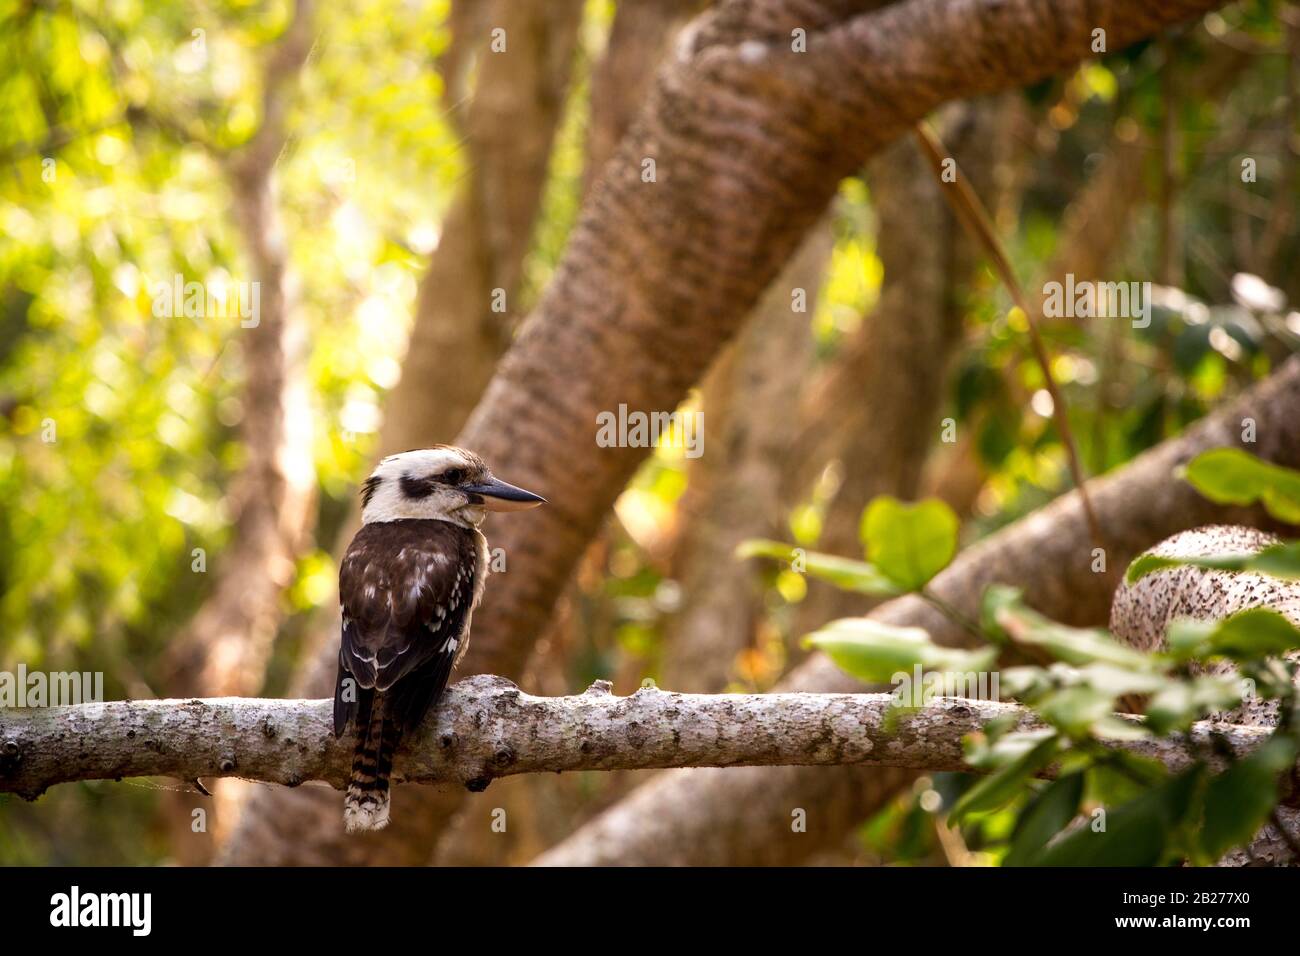 Australian native bird kookaburra on a tree Stock Photo